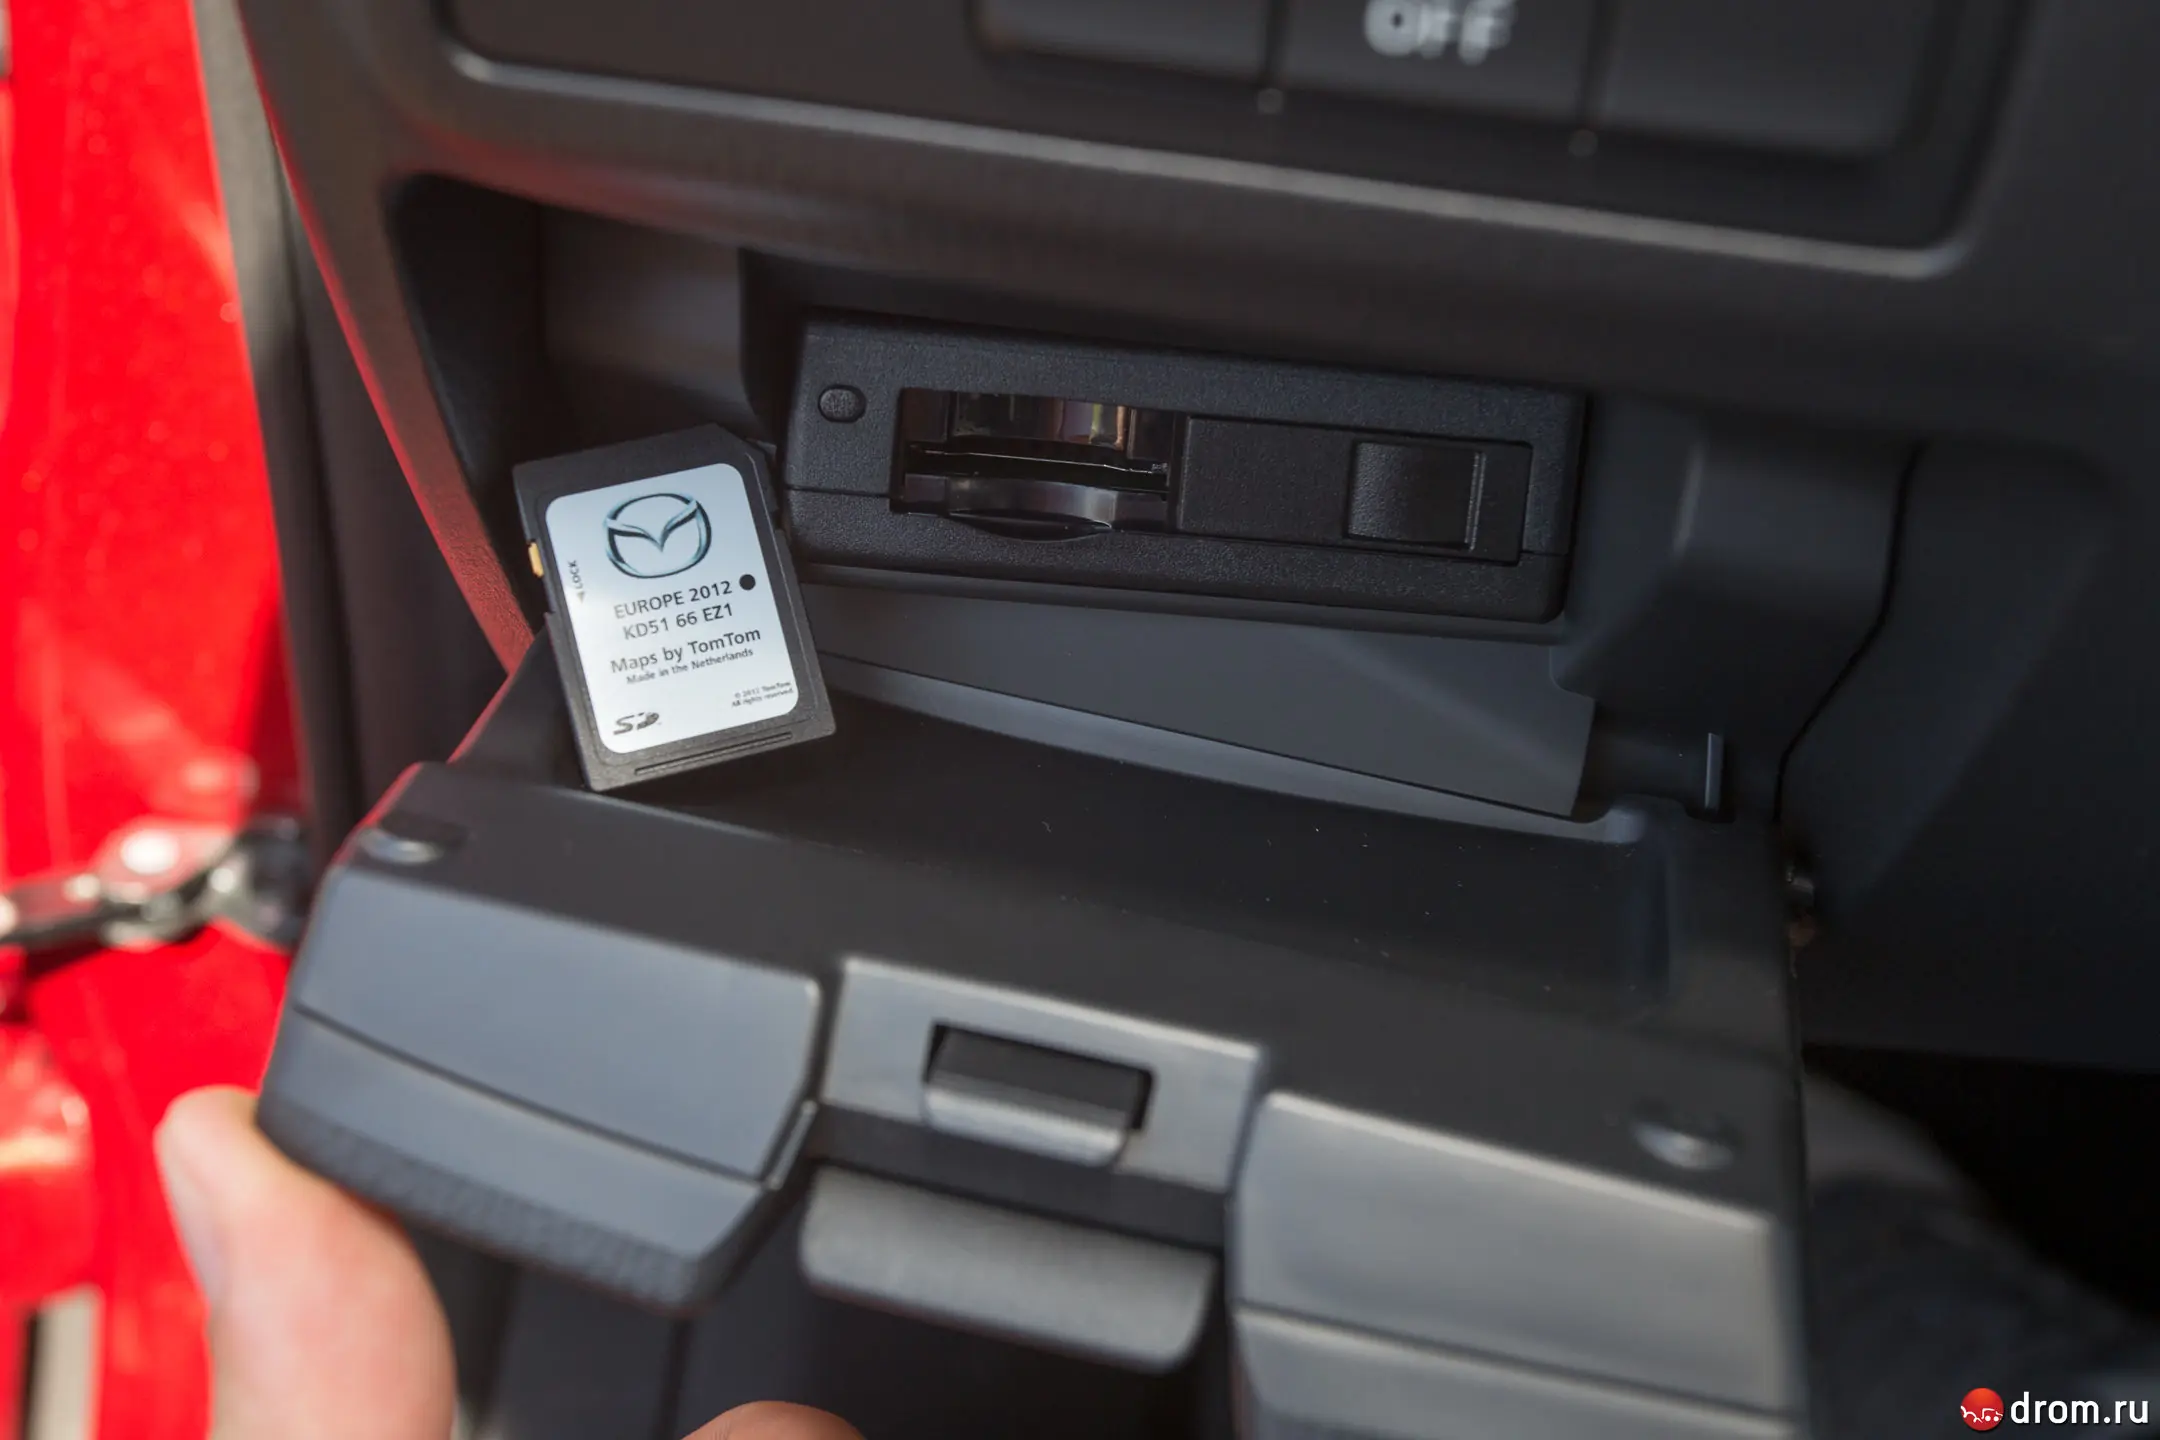 Карта мазда сх5. Блок навигации Mazda CX-5 2013. Мазда сх5 разъем под SD карту. Mazda CX-5 SD Card Slot. Мазда СХ-5 2013г 2.0 разъем под флешку навигации.